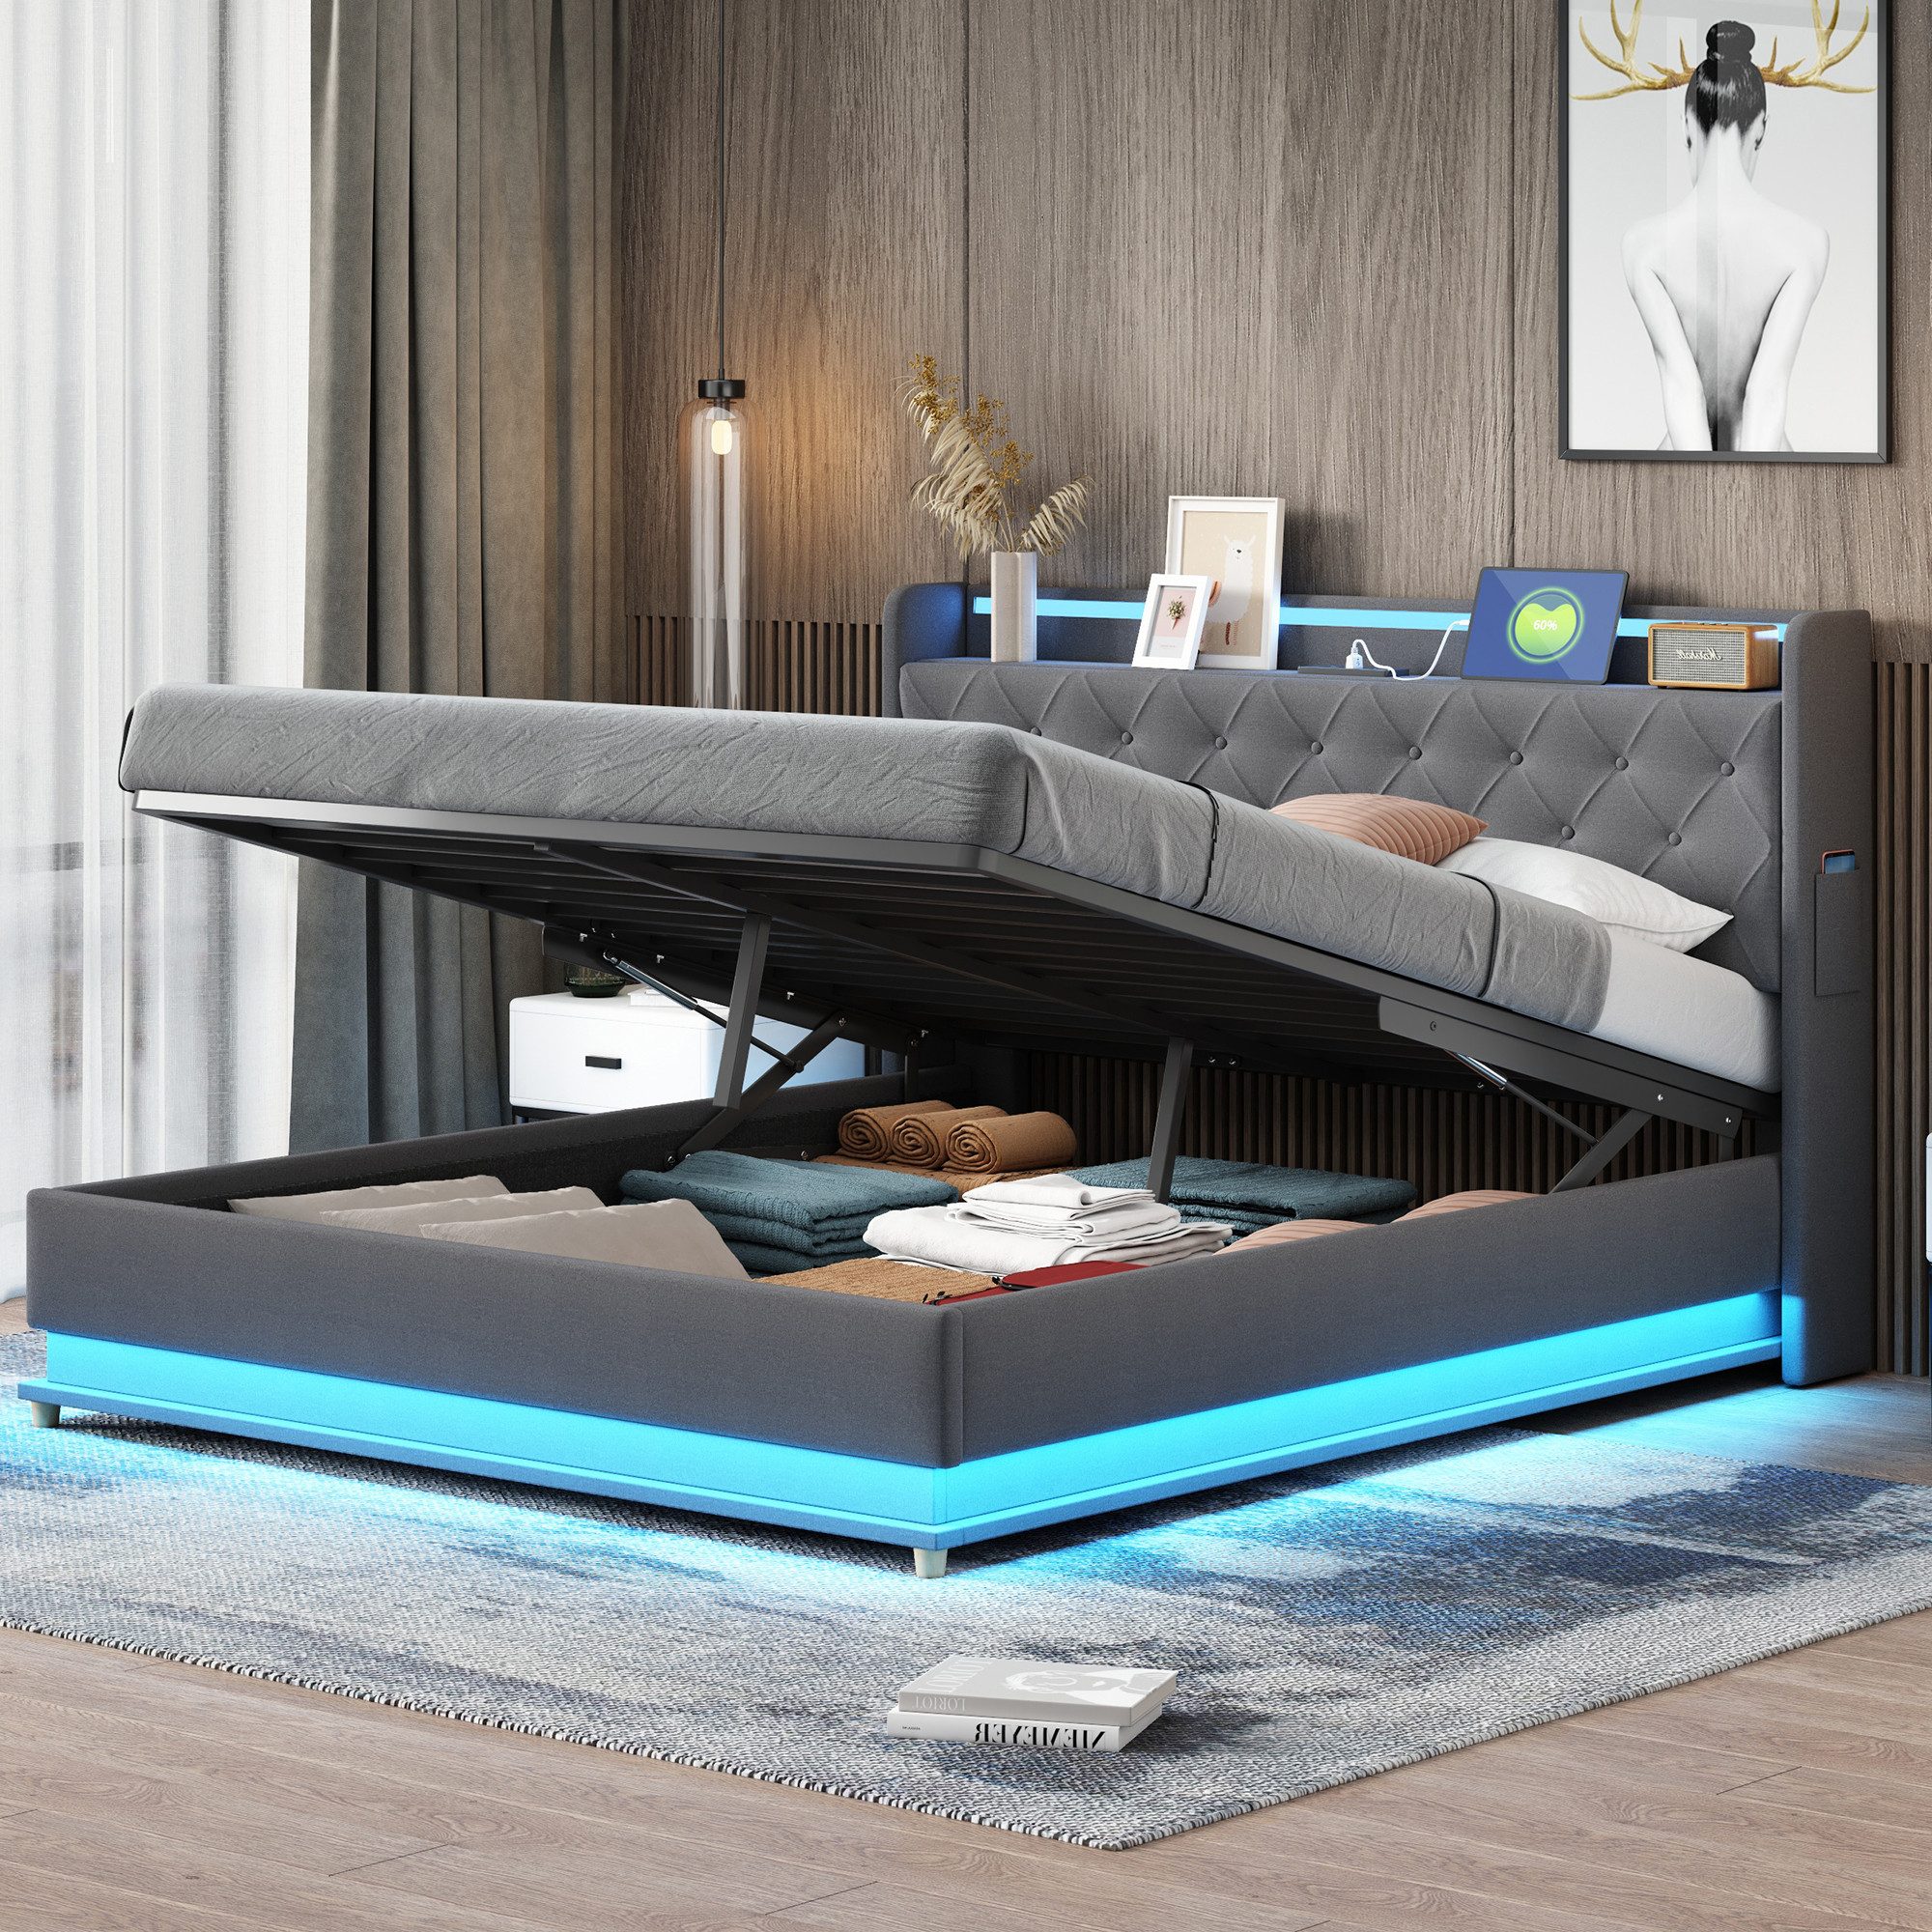 NMonet Polsterbett Doppelbett Stauraumbett (Hydraulisch anhebbarer Bettstauraum), mit 4 USB-Ladeanschlus, LED-Beleuchtung, Bettkasten, Leinen, 160x200cm